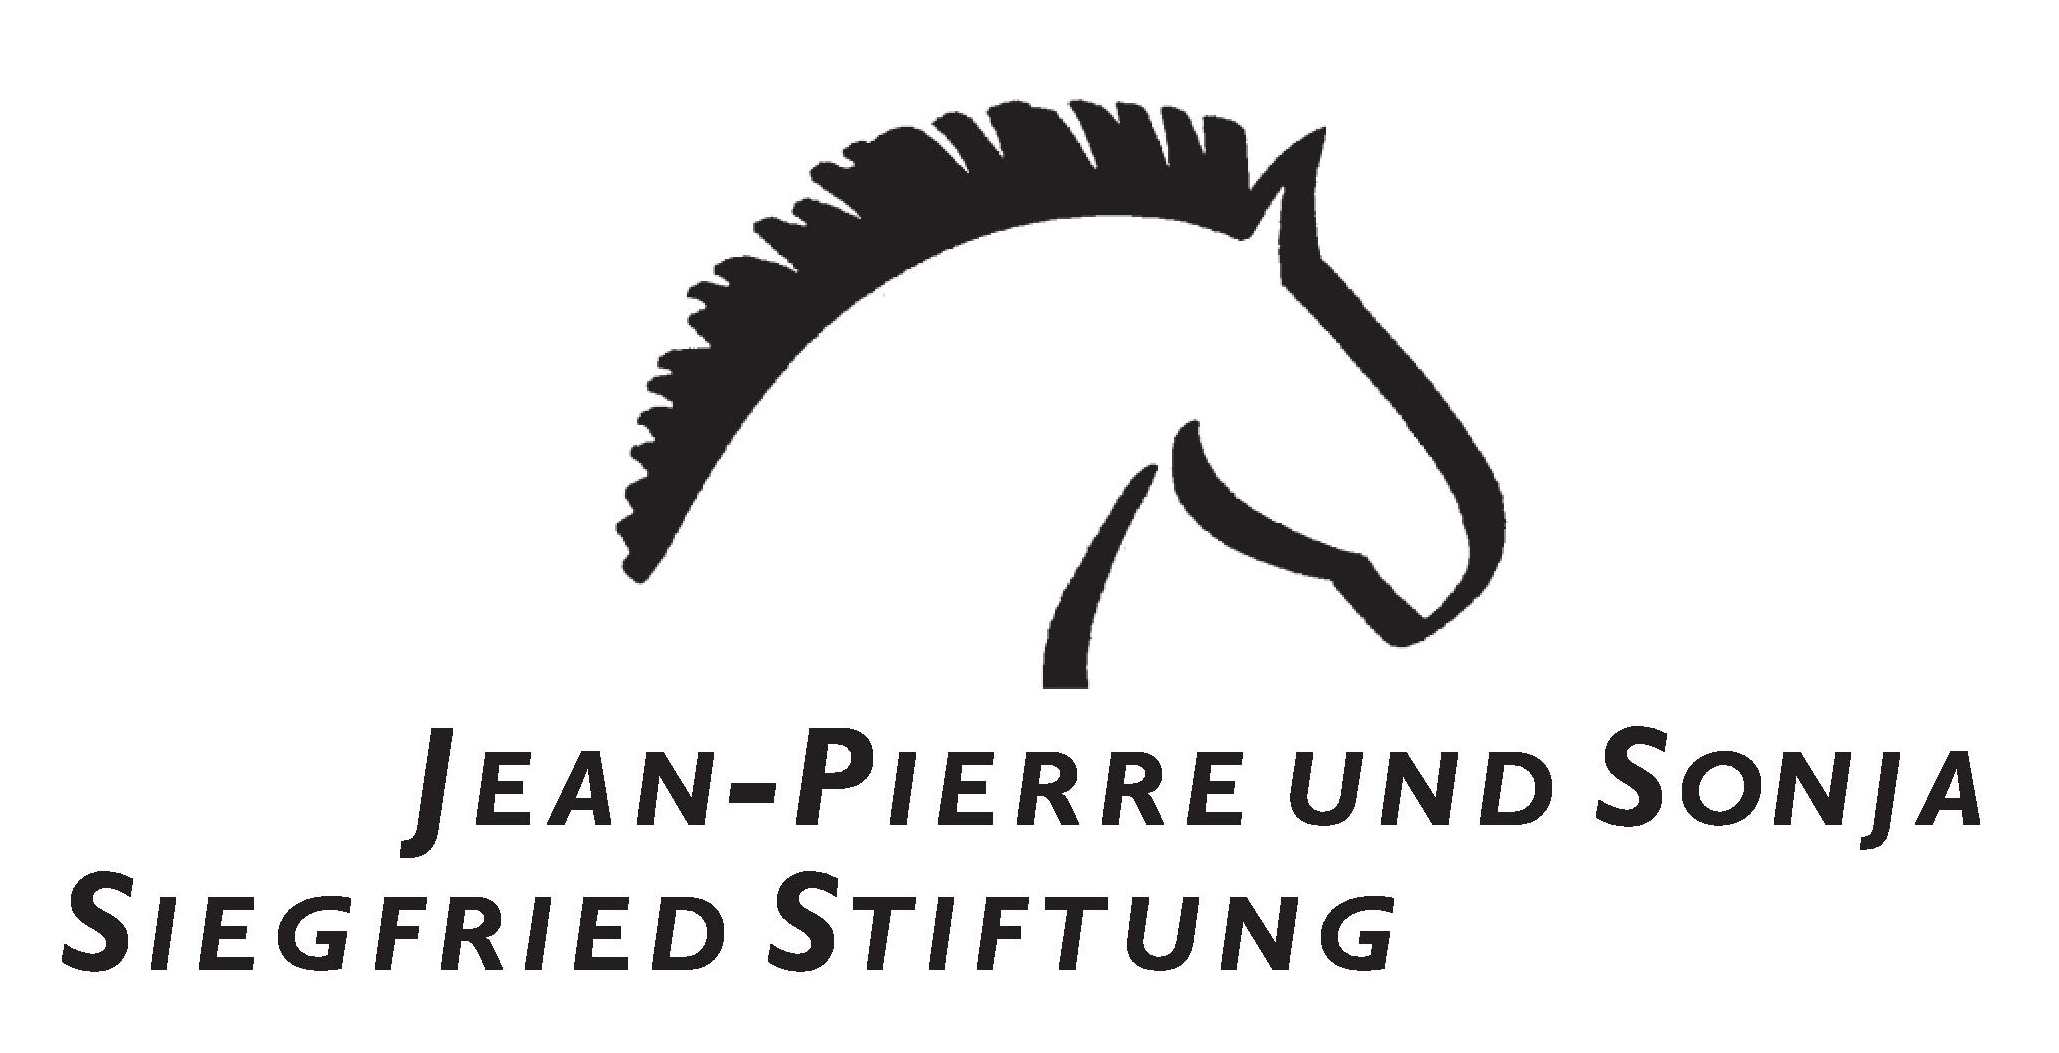 Jean Pierre und Sonja Siegfried Stiftung